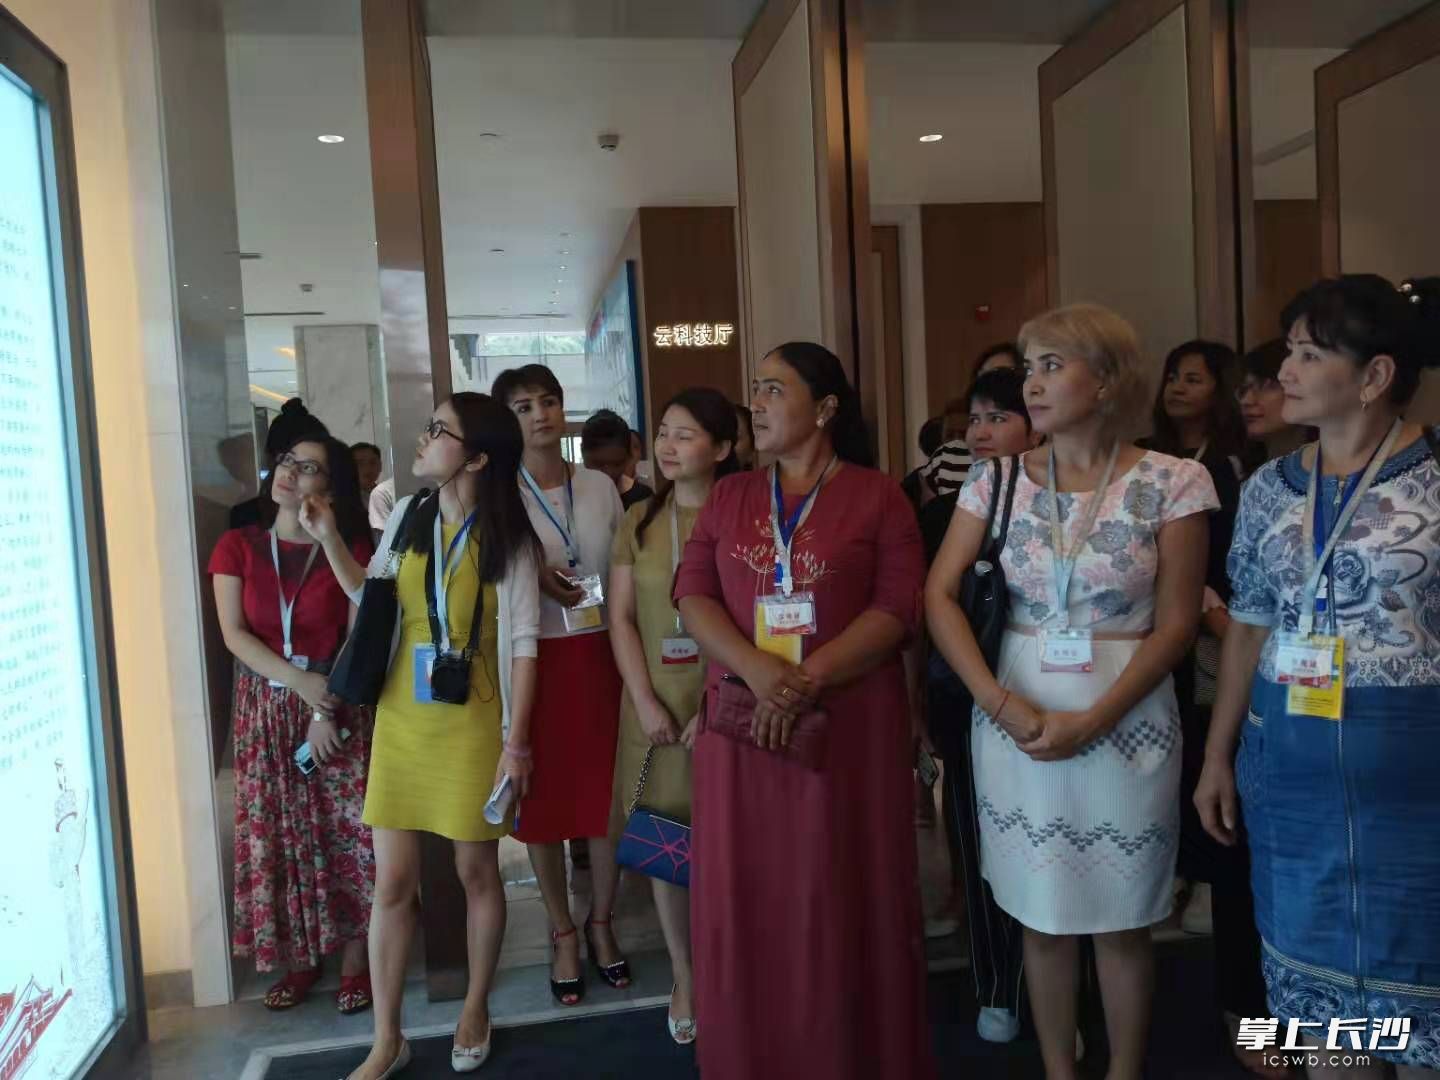 中乌女企业家一同参观长沙宁儿妇产医院。